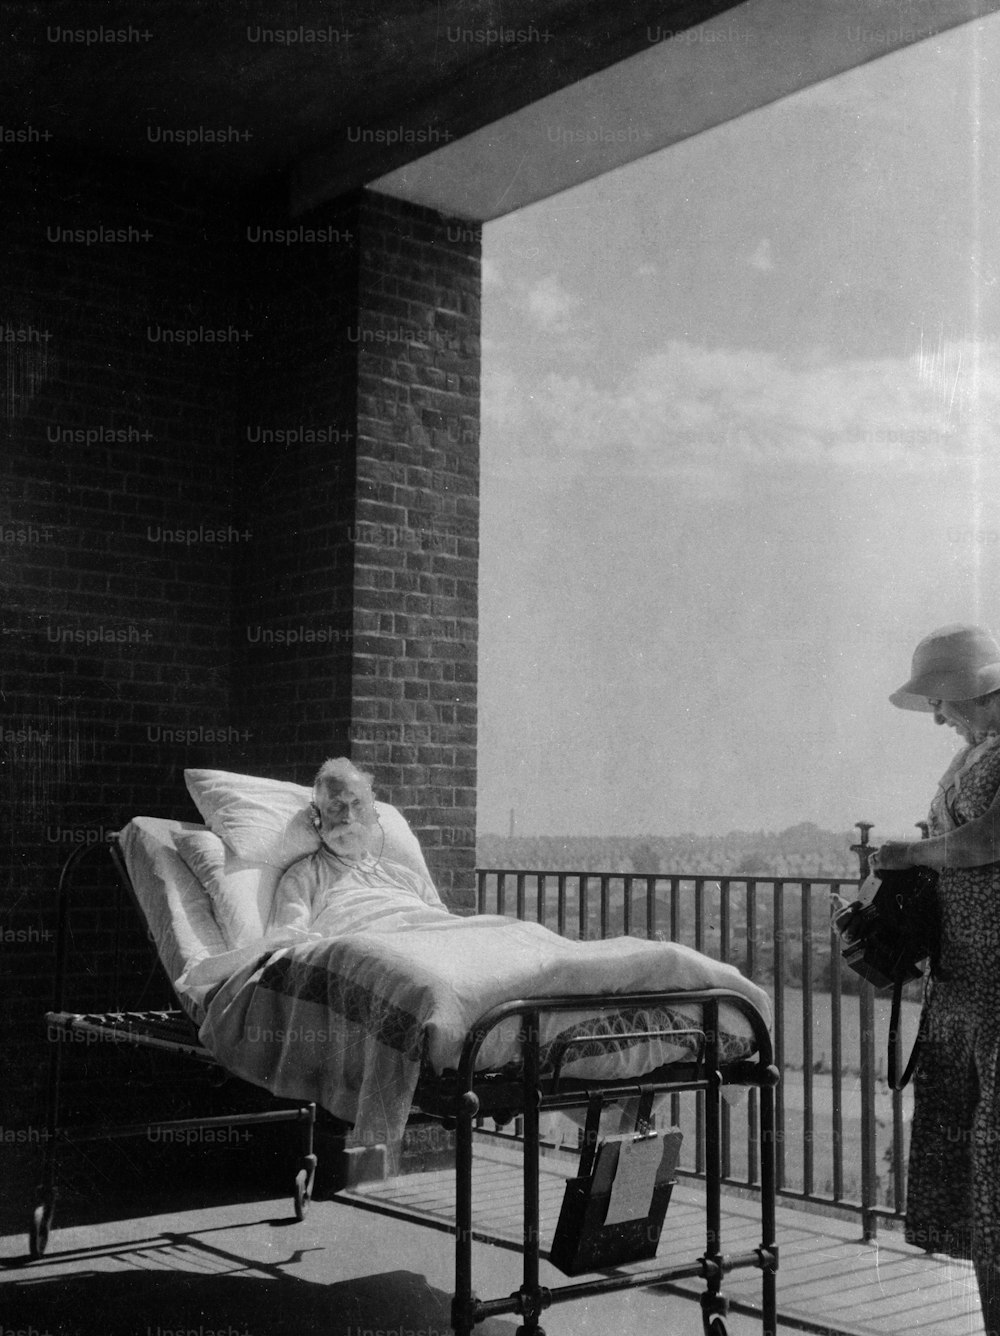 um 1930: Ein älterer Patient erholt sich mit seinem Krankenhausbett auf einem Balkon, um seine Genesung mit gesunder frischer Luft zu beschleunigen.  (Foto von Chaloner Woods / Getty Images)